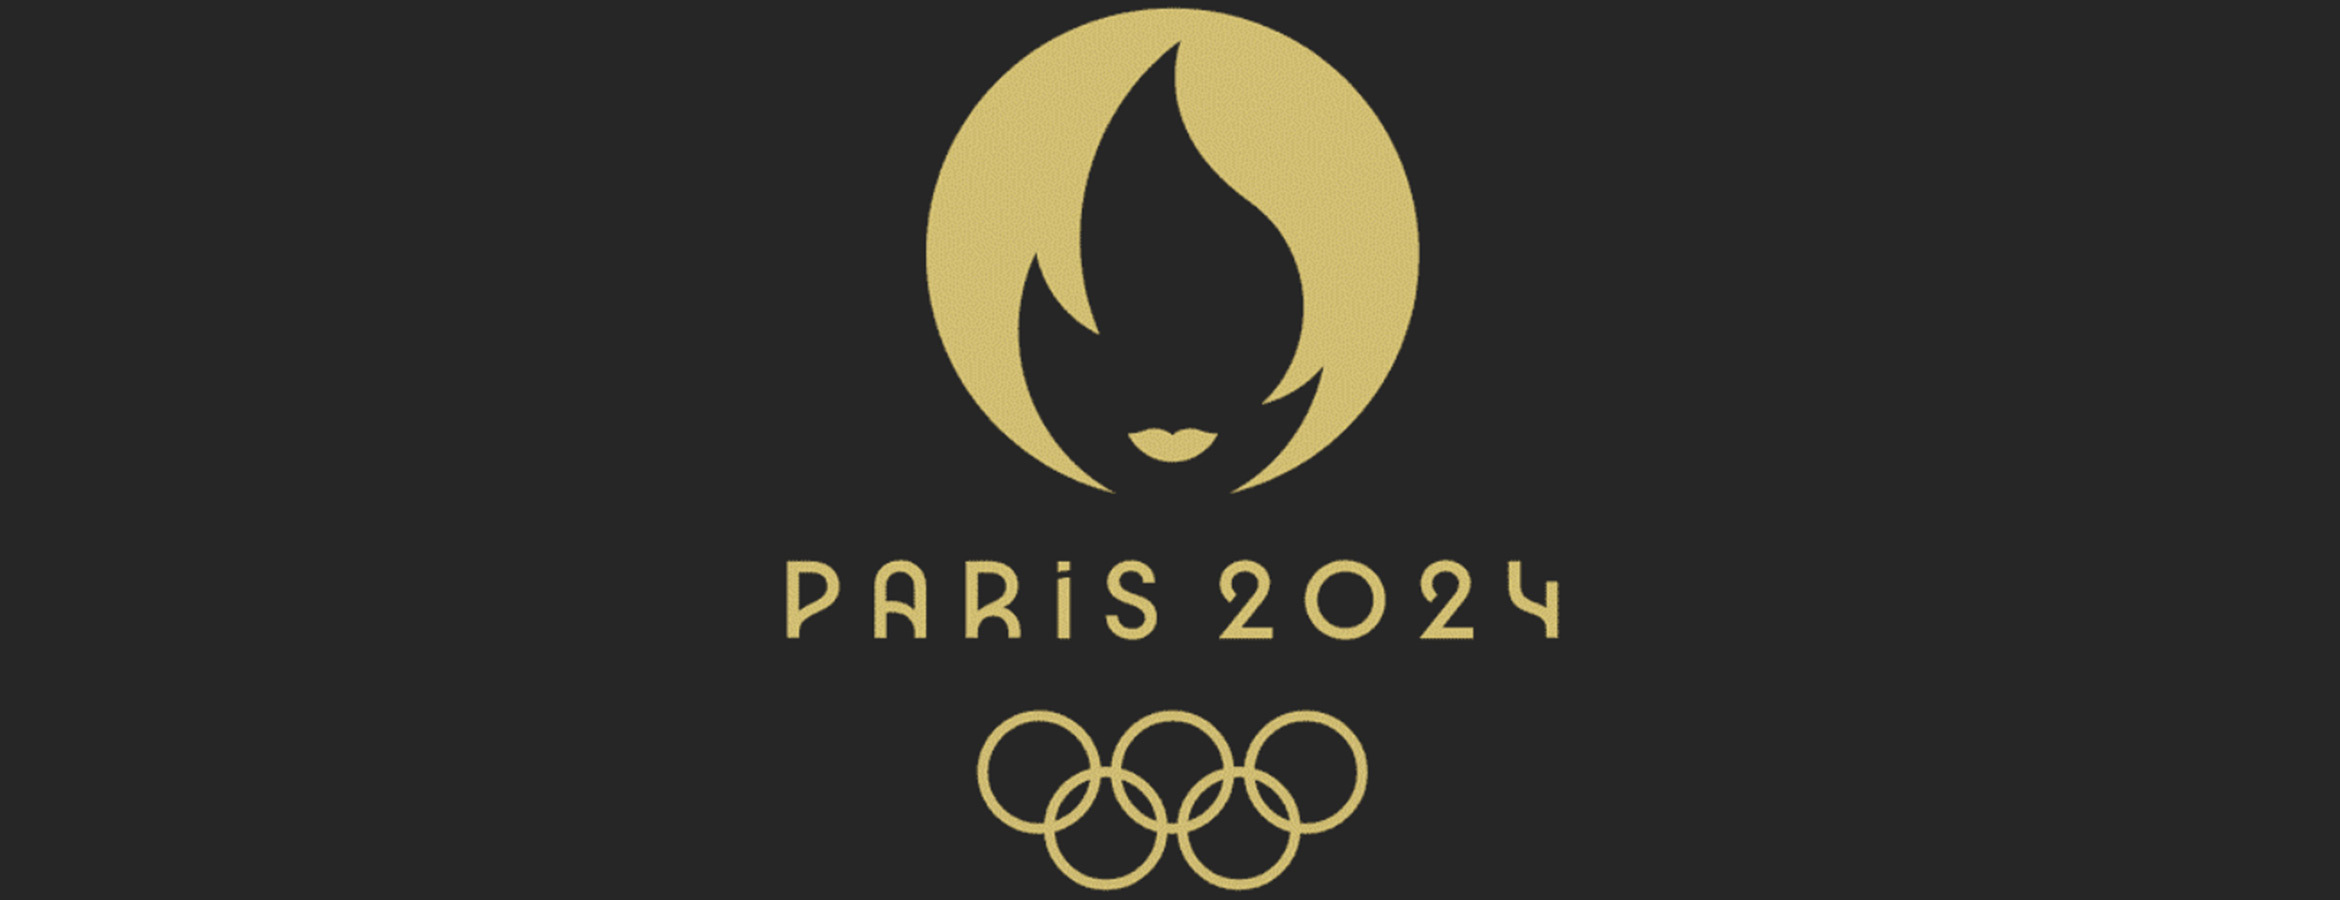 Découvrez la conception du logo des prochains JO Paris 2024 La Réclame